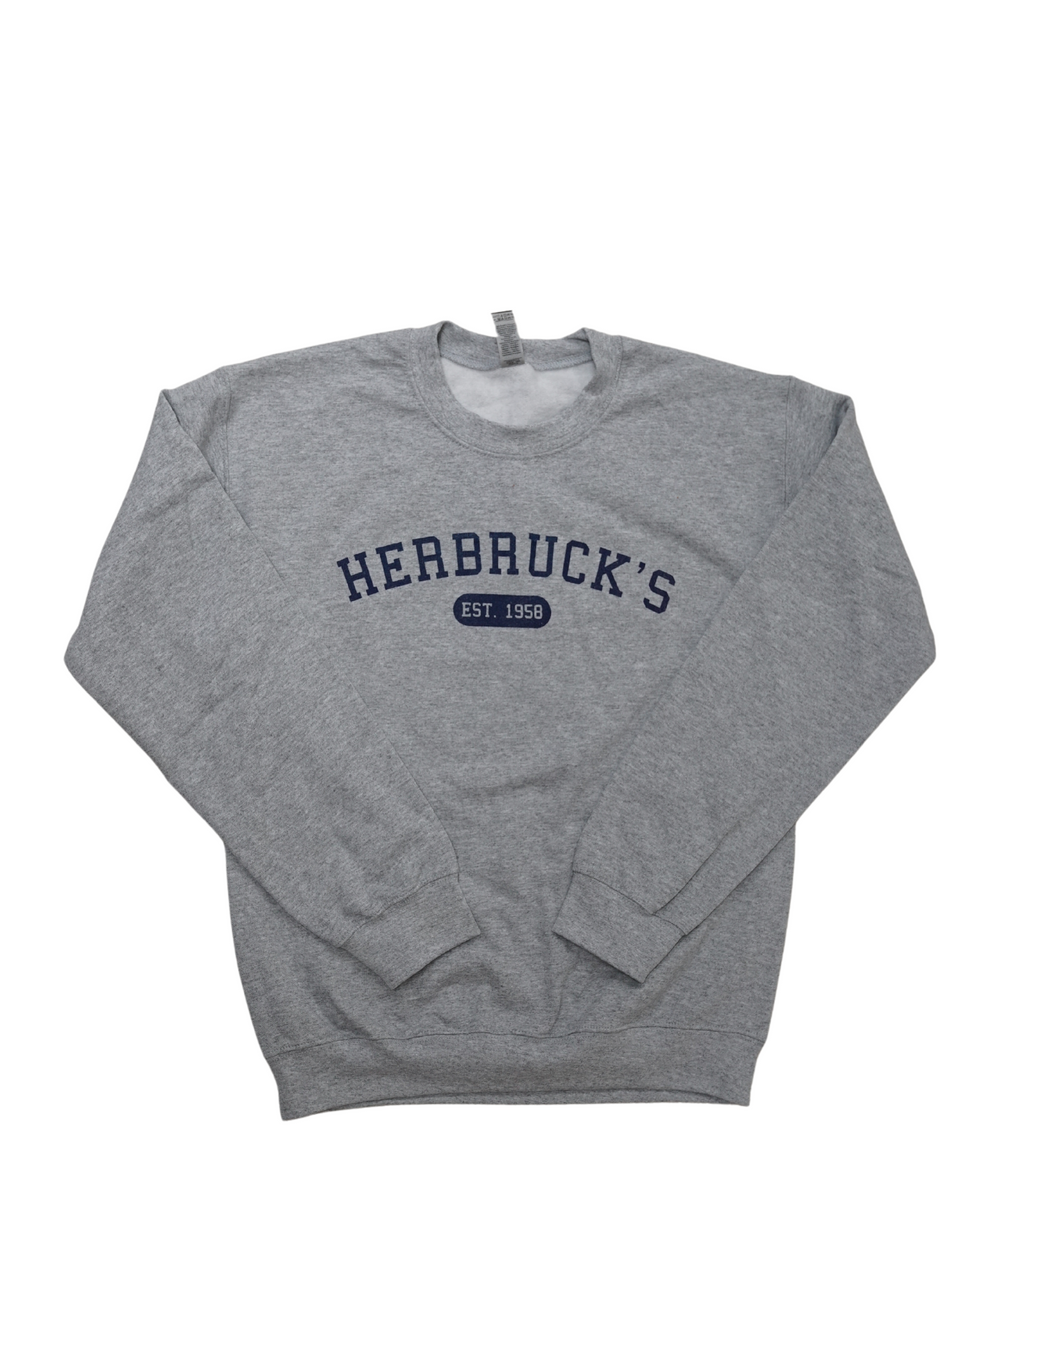 Grey Herbruck's Crewneck